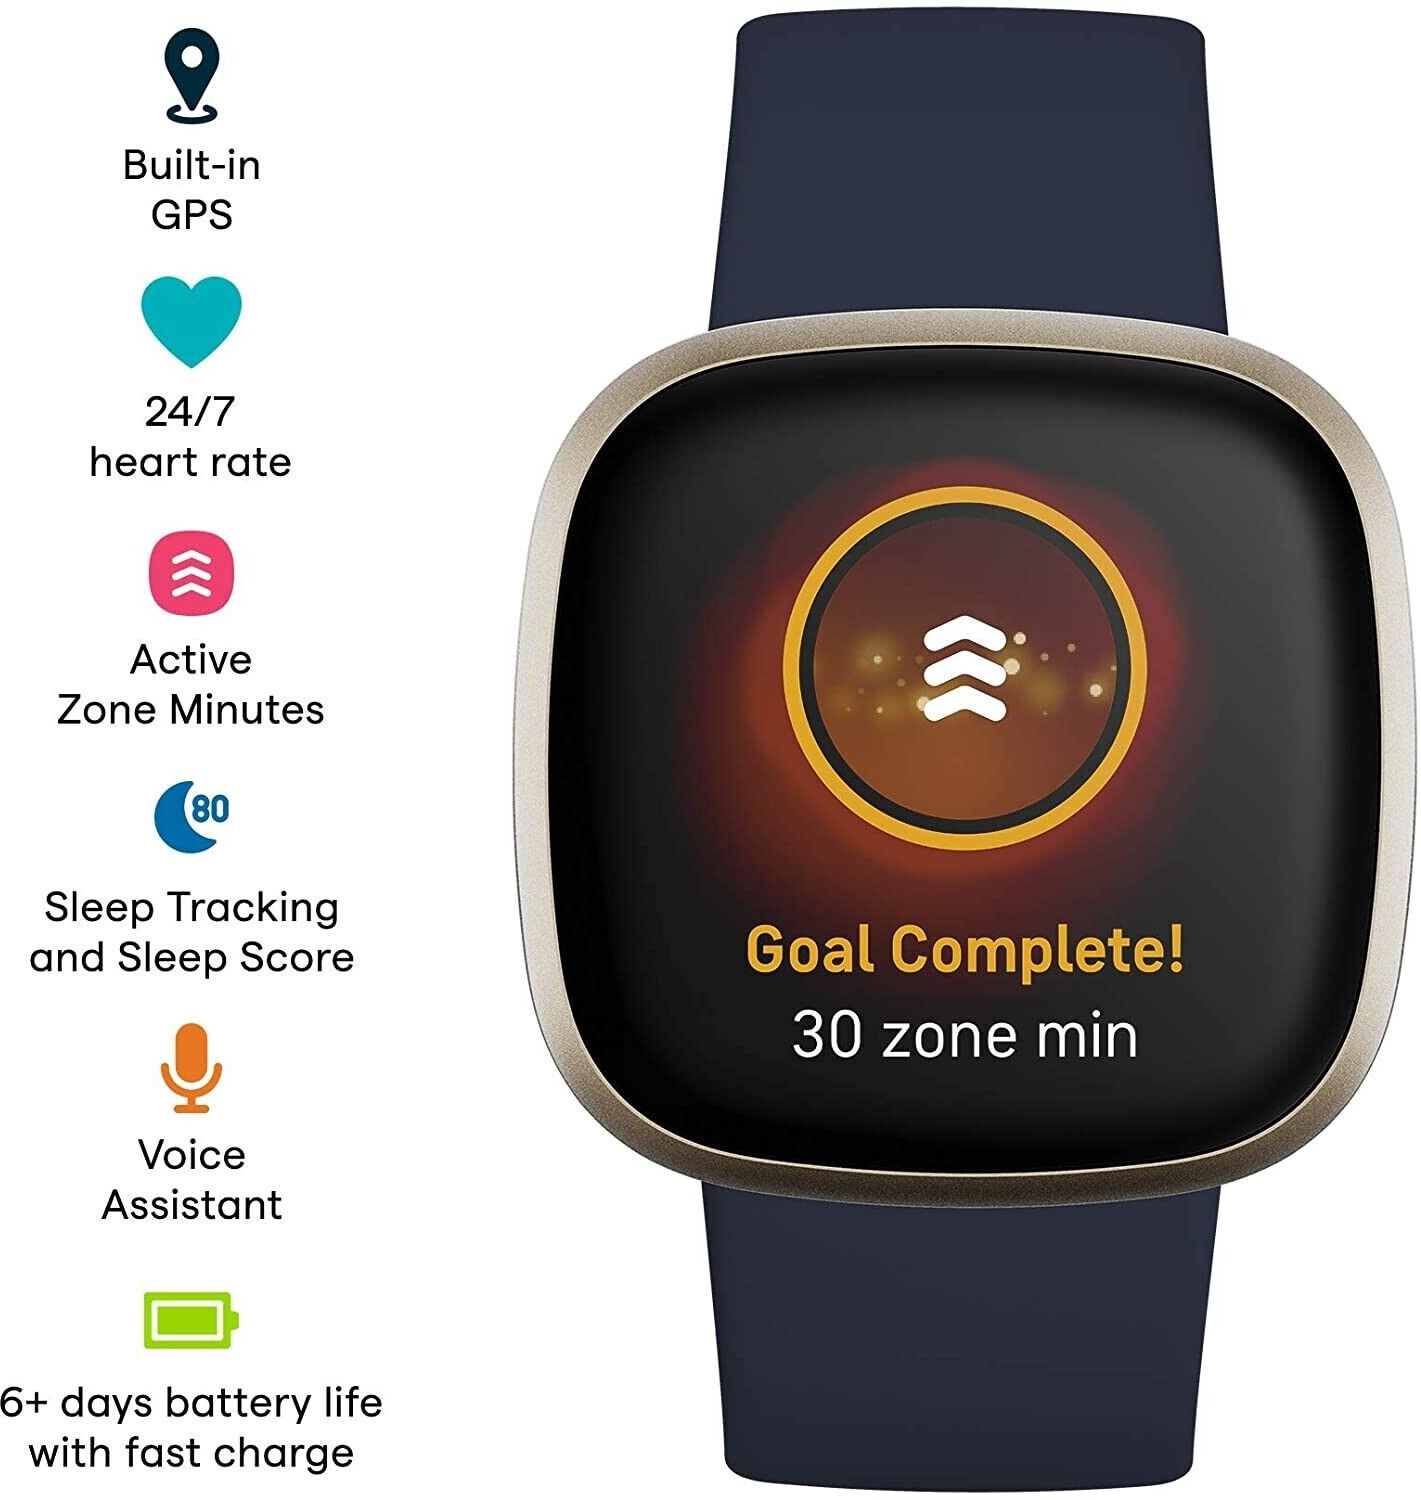 Fitbit Versa 3 - Smartwatch de salud y forma física con GPS